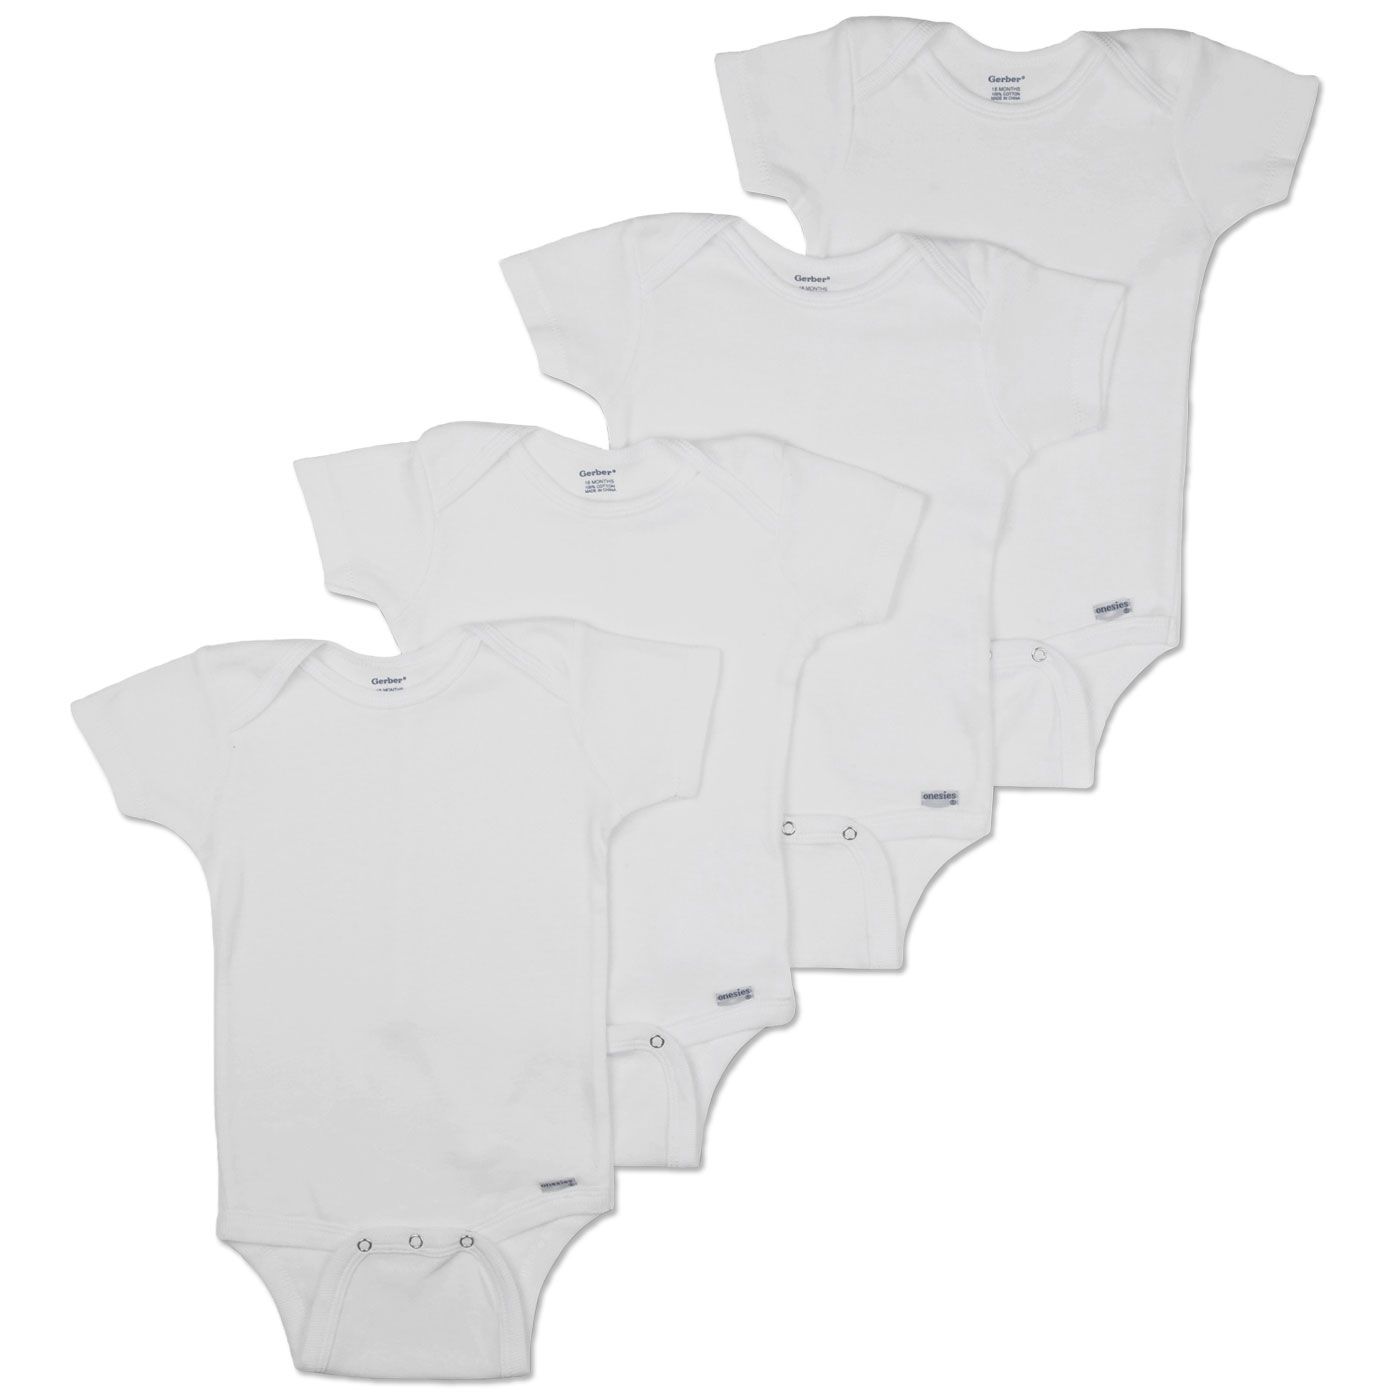 Gerber Unisex Baby's Short Sleeve Onesies Four Pack Underwear